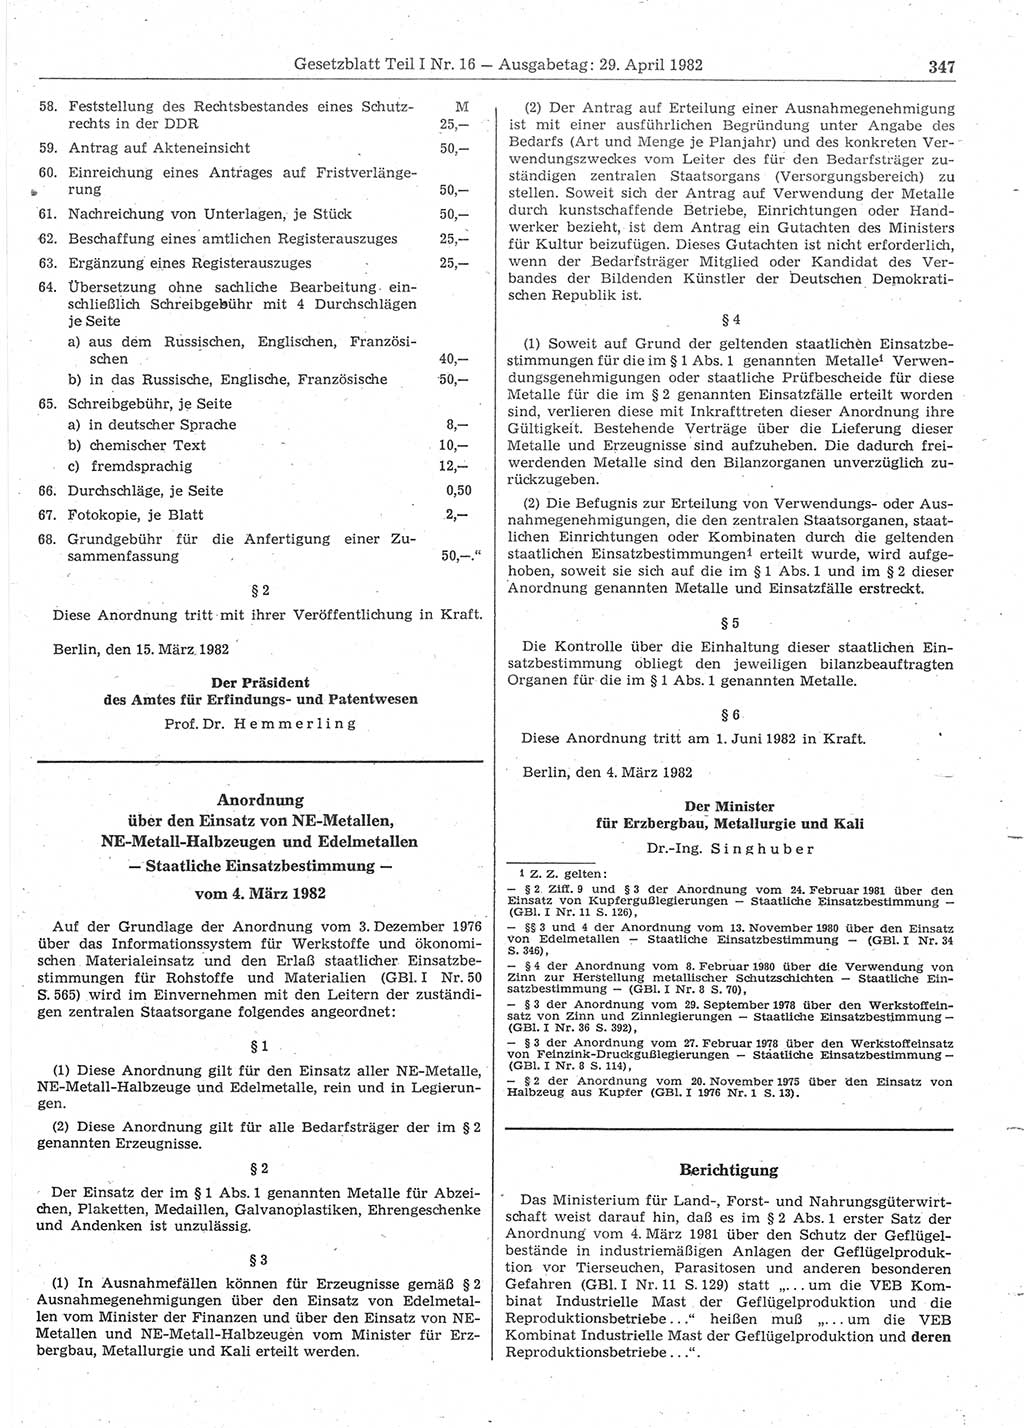 Gesetzblatt (GBl.) der Deutschen Demokratischen Republik (DDR) Teil Ⅰ 1982, Seite 347 (GBl. DDR Ⅰ 1982, S. 347)